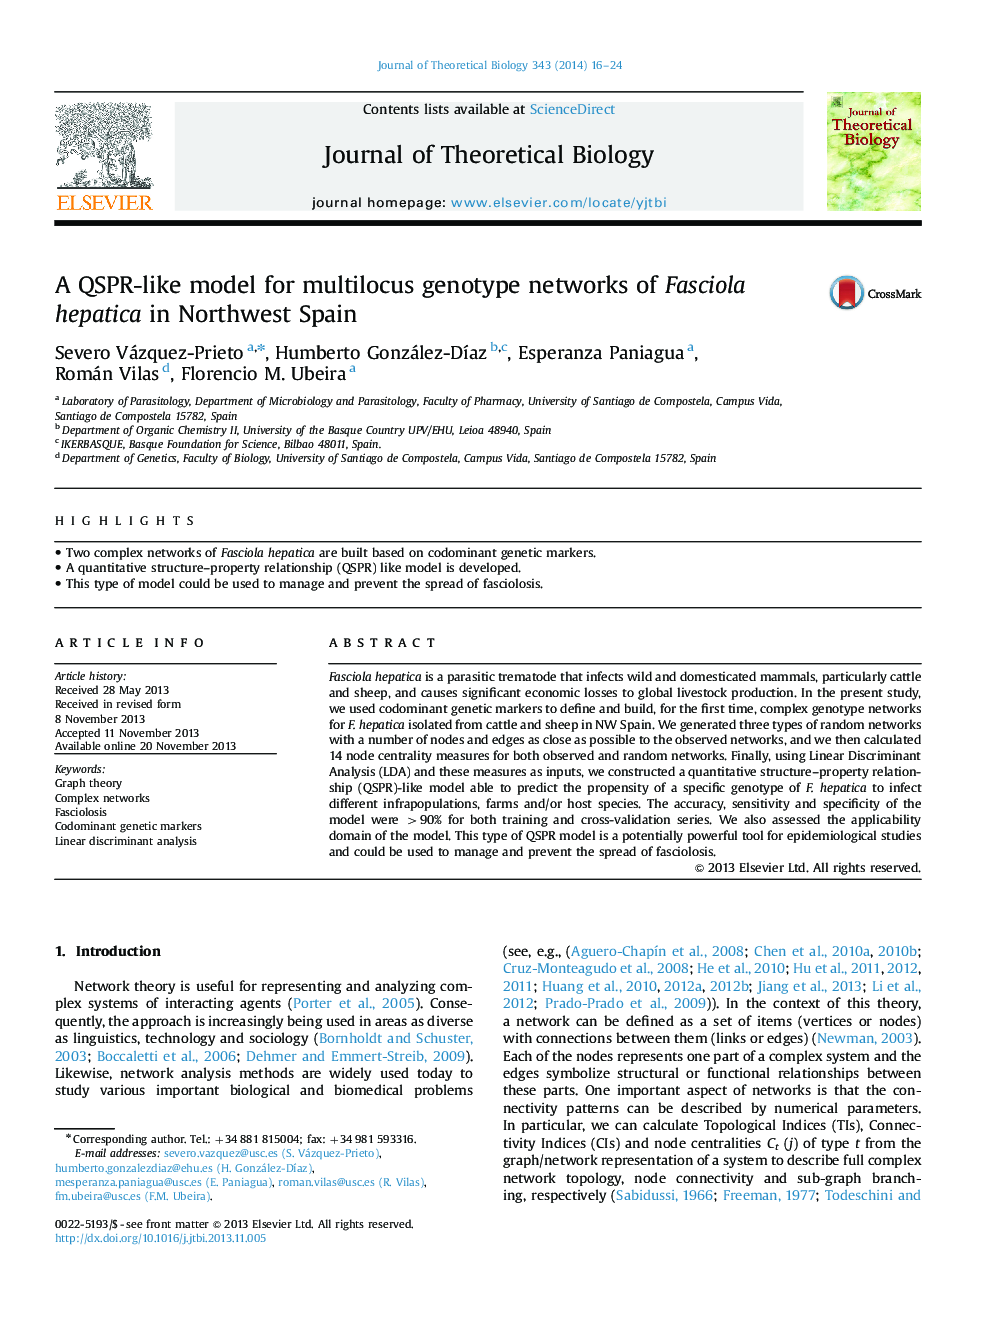 A QSPR-like model for multilocus genotype networks of Fasciola hepatica in Northwest Spain